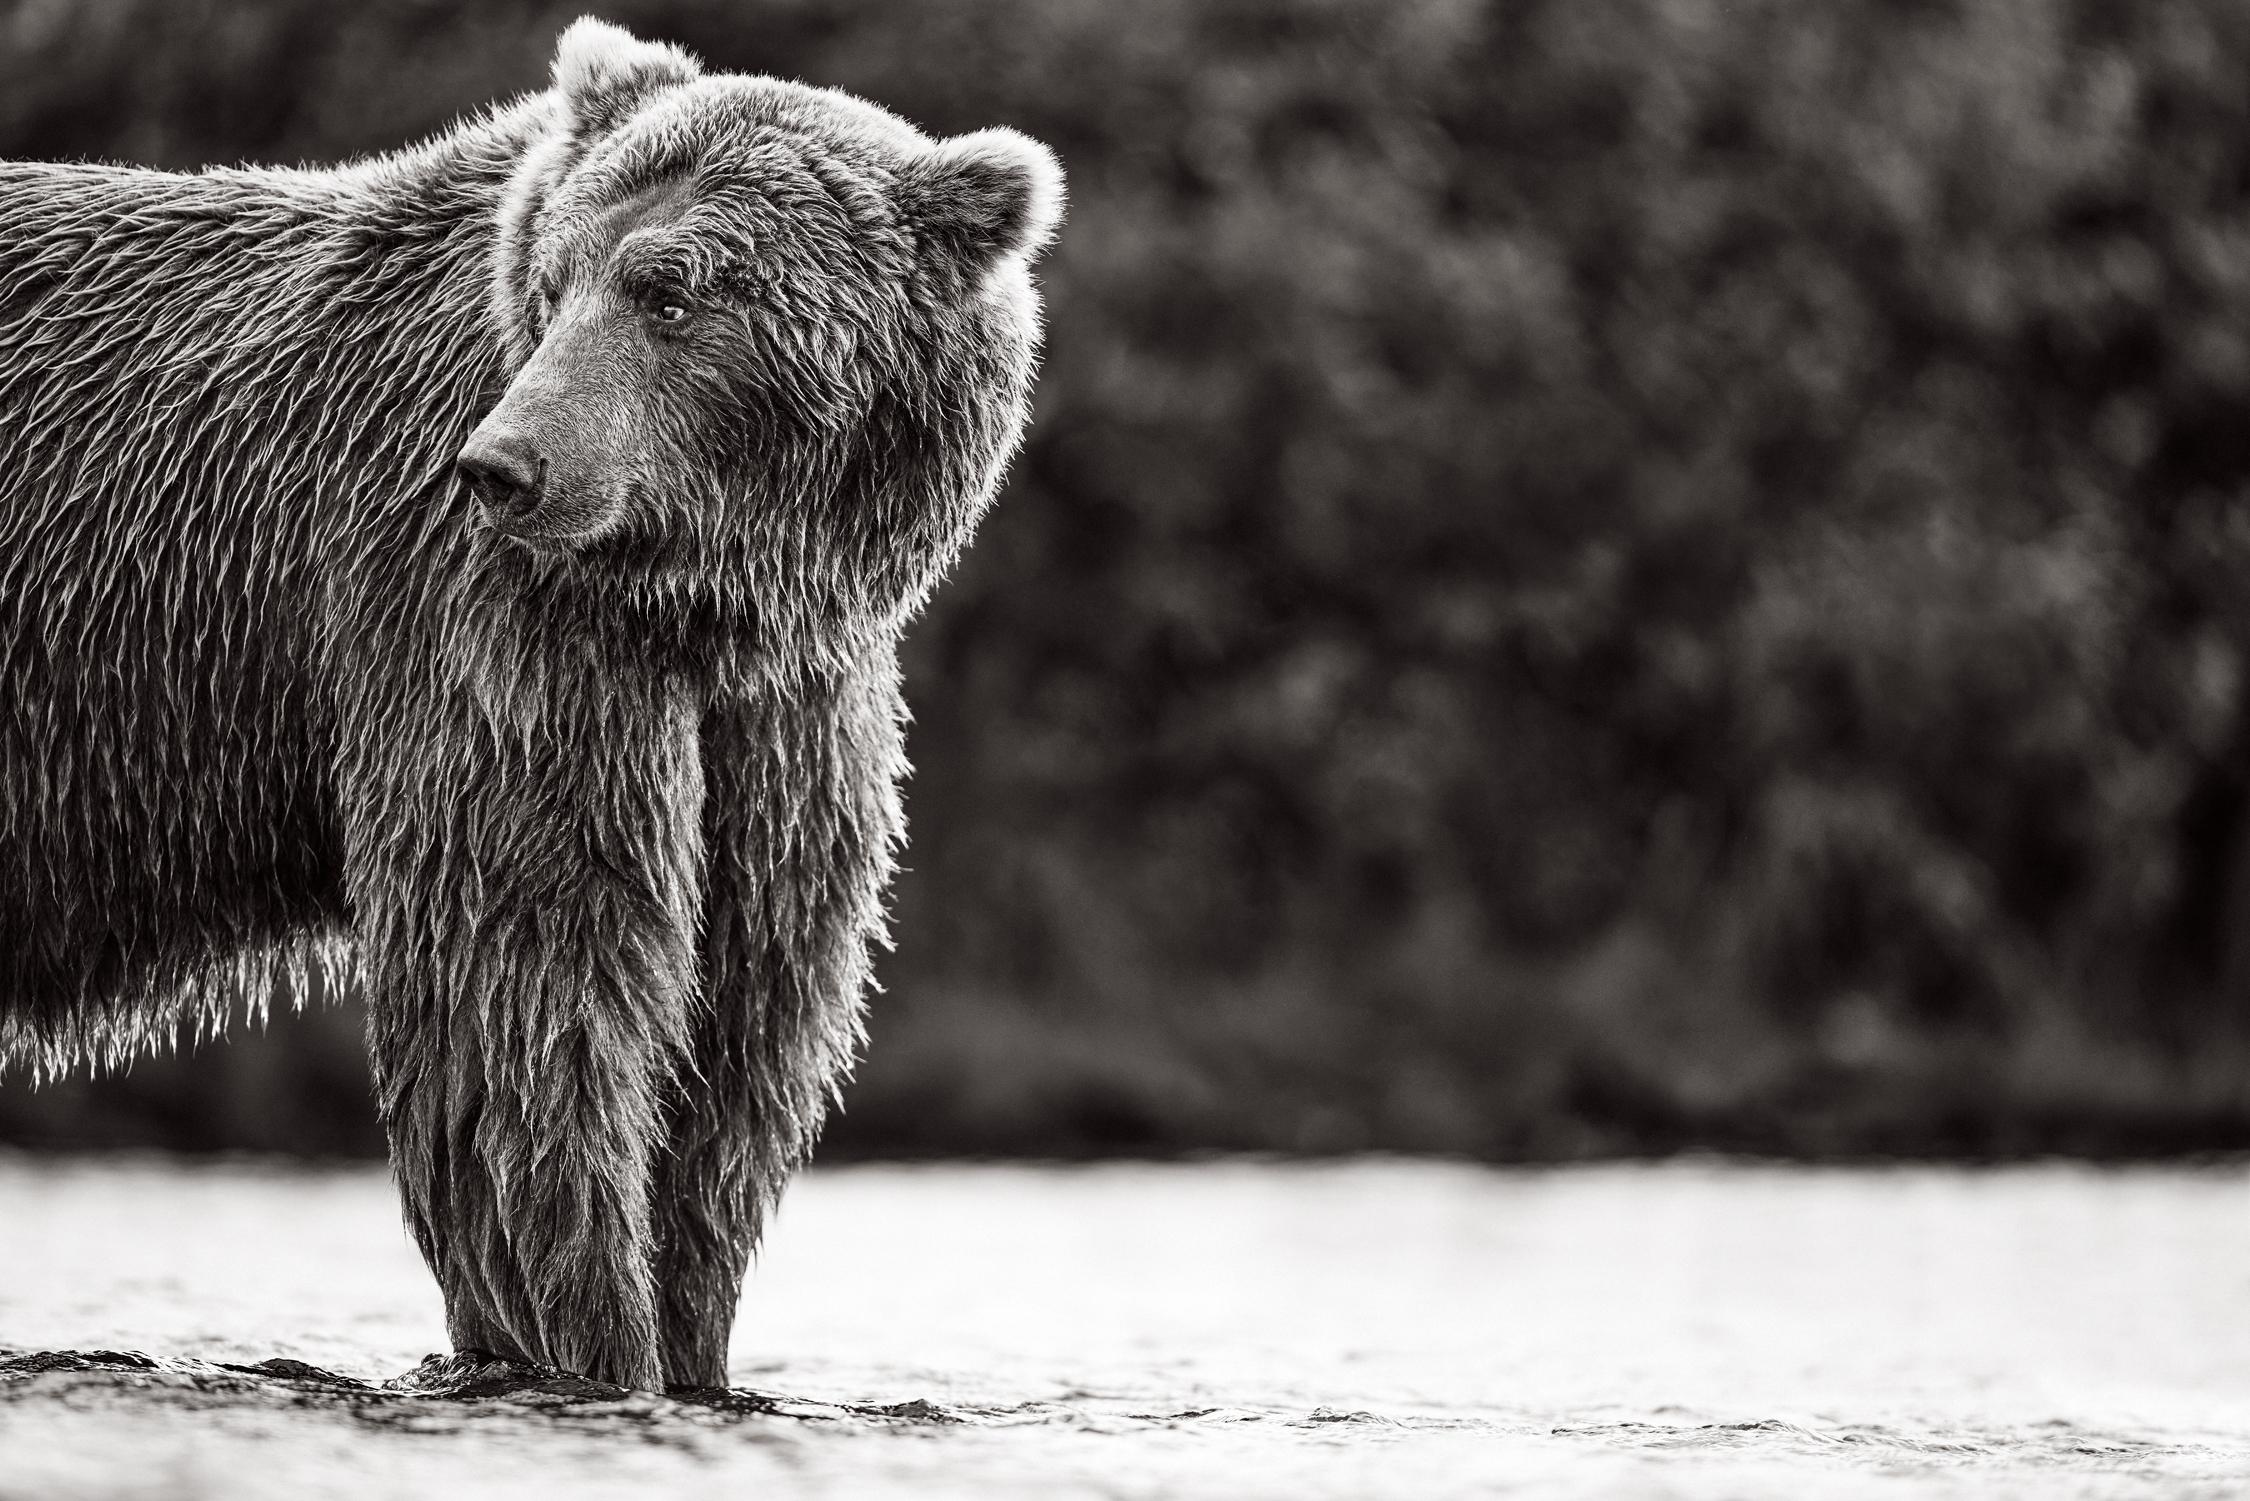 Drew Doggett Black and White Photograph – Brauner Bär schaut im Profil über die Schulter